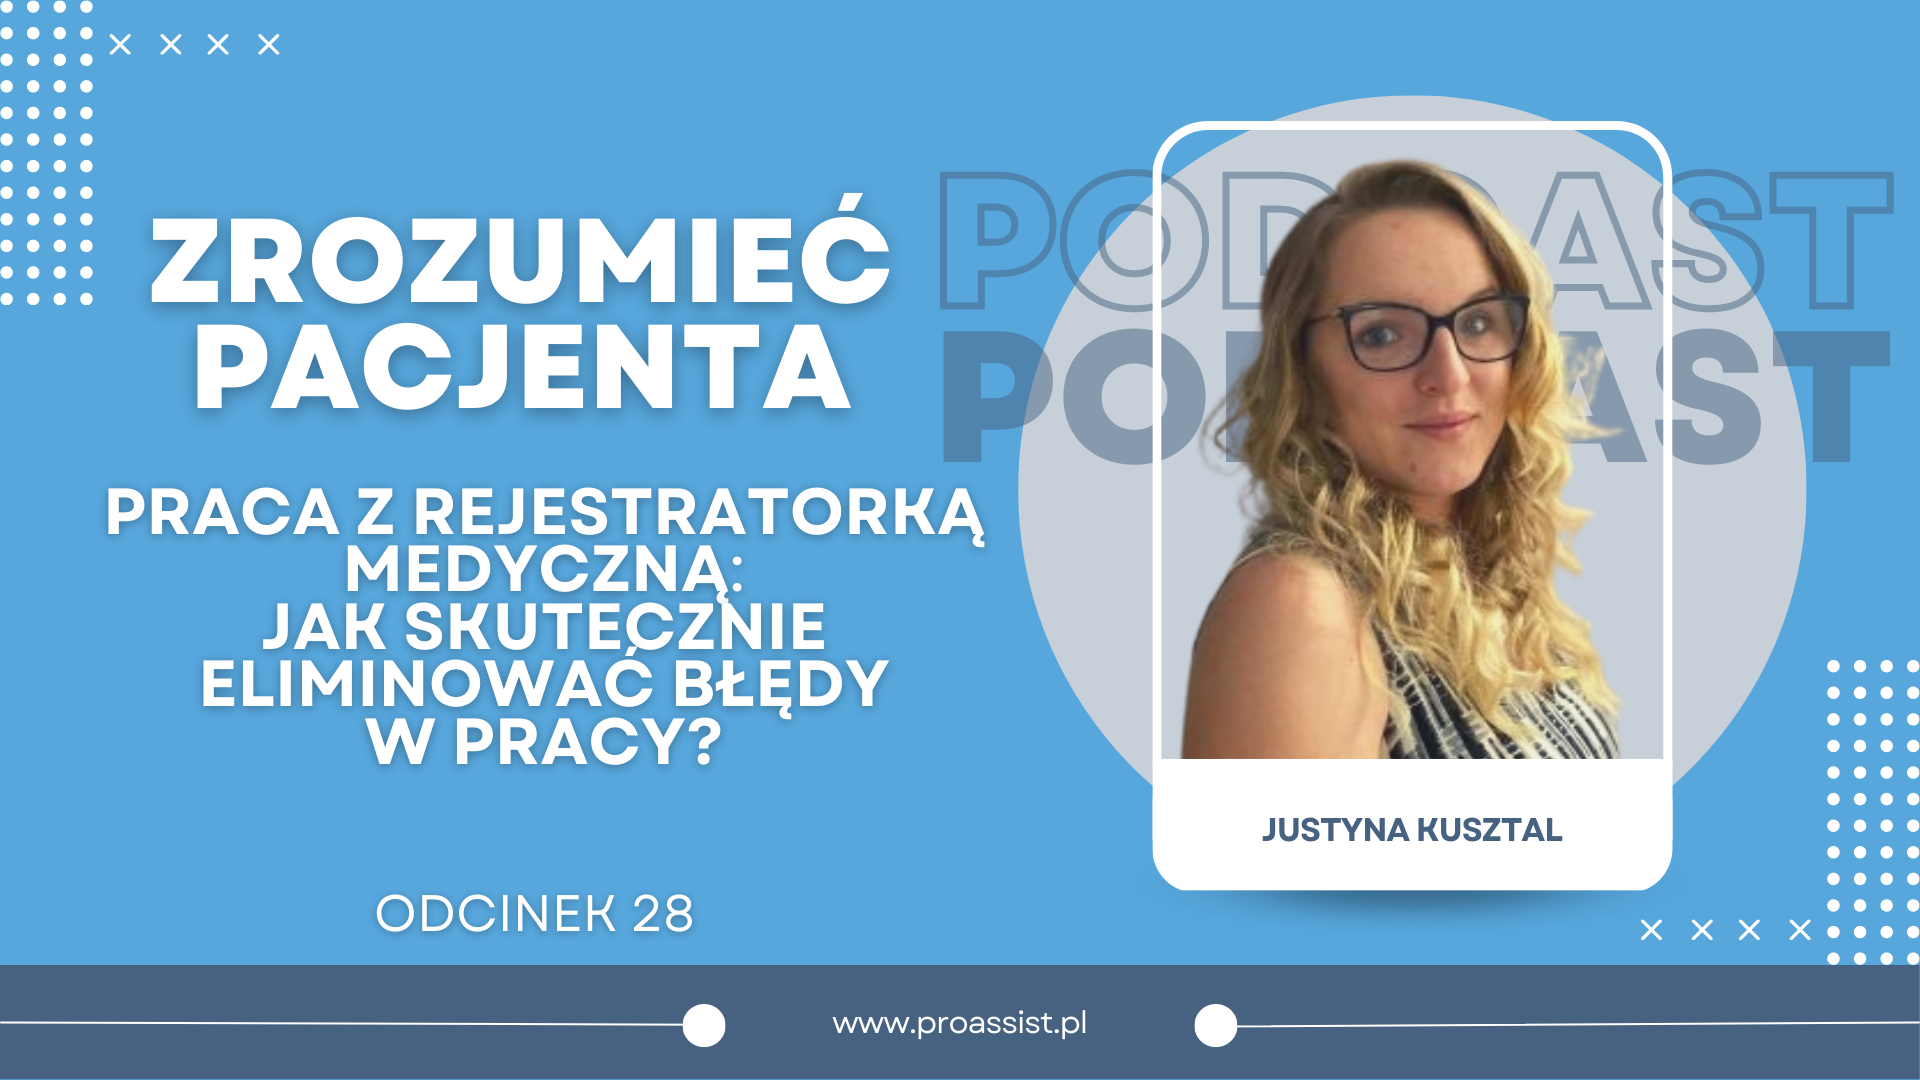 Okładka do podcastu- zrozumieć pacjenta. Justyna Kusztal